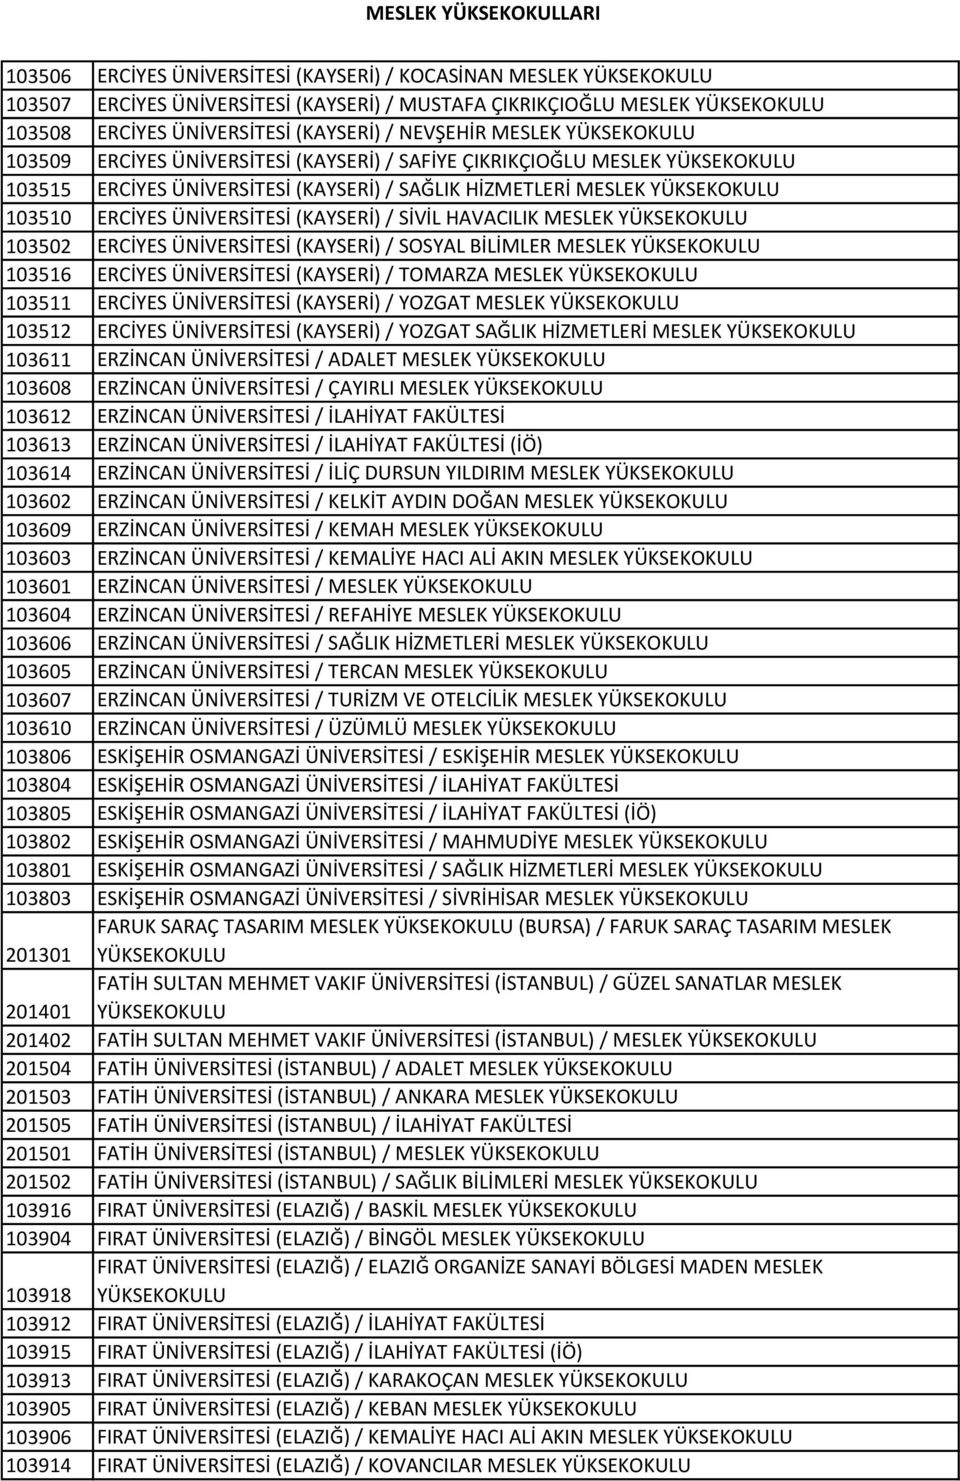 ÜNİVERSİTESİ (KAYSERİ) / SİVİL HAVACILIK MESLEK YÜKSEKOKULU 103502 ERCİYES ÜNİVERSİTESİ (KAYSERİ) / SOSYAL BİLİMLER MESLEK YÜKSEKOKULU 103516 ERCİYES ÜNİVERSİTESİ (KAYSERİ) / TOMARZA MESLEK